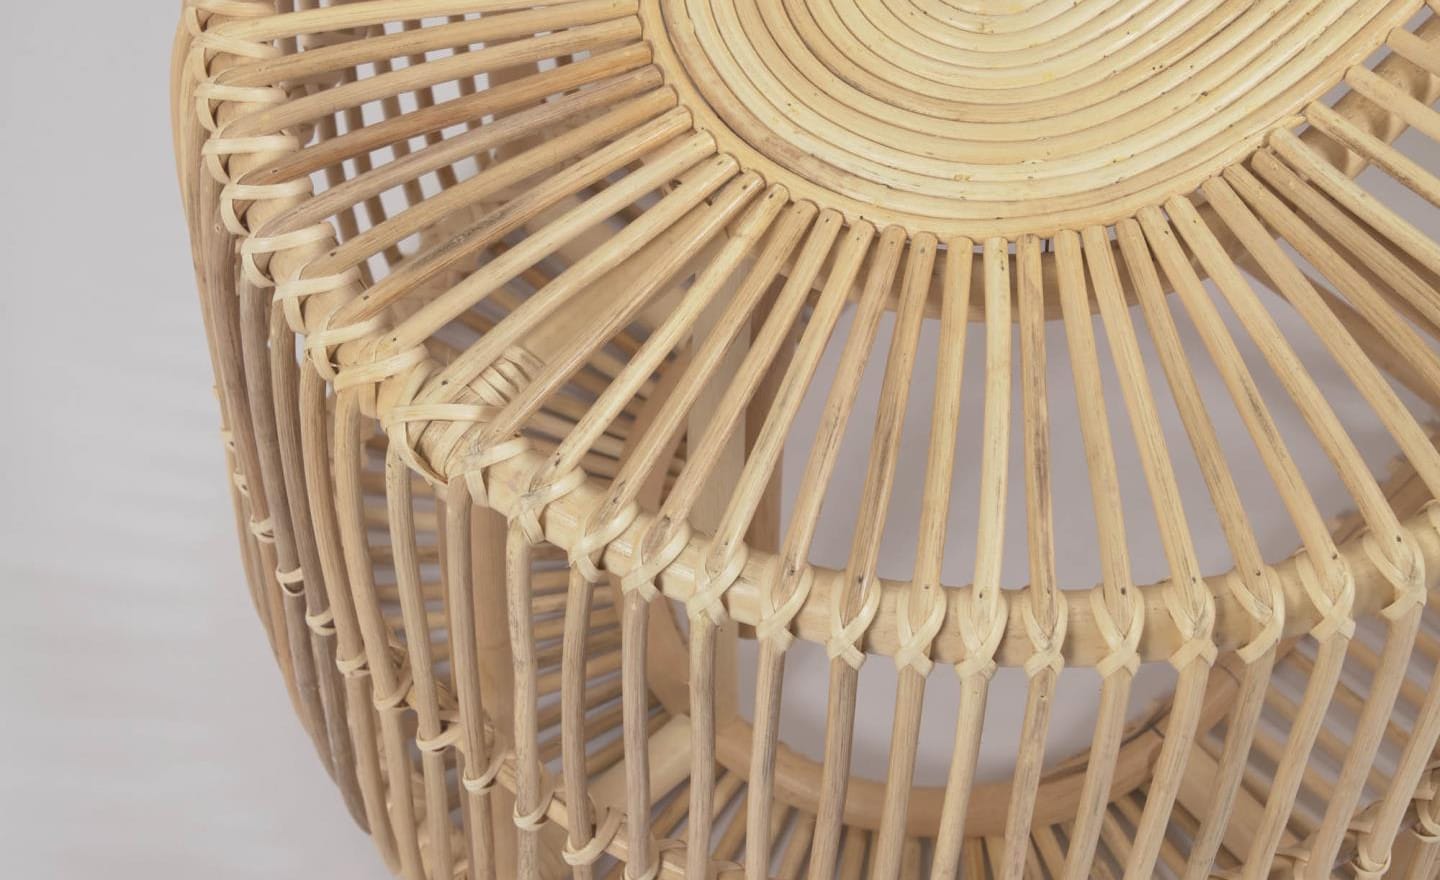 Mesa de Centro Lael feita em ratán com acabamento natural. Peça artesanal e exclusiva, com tonalidades e texturas próprias.